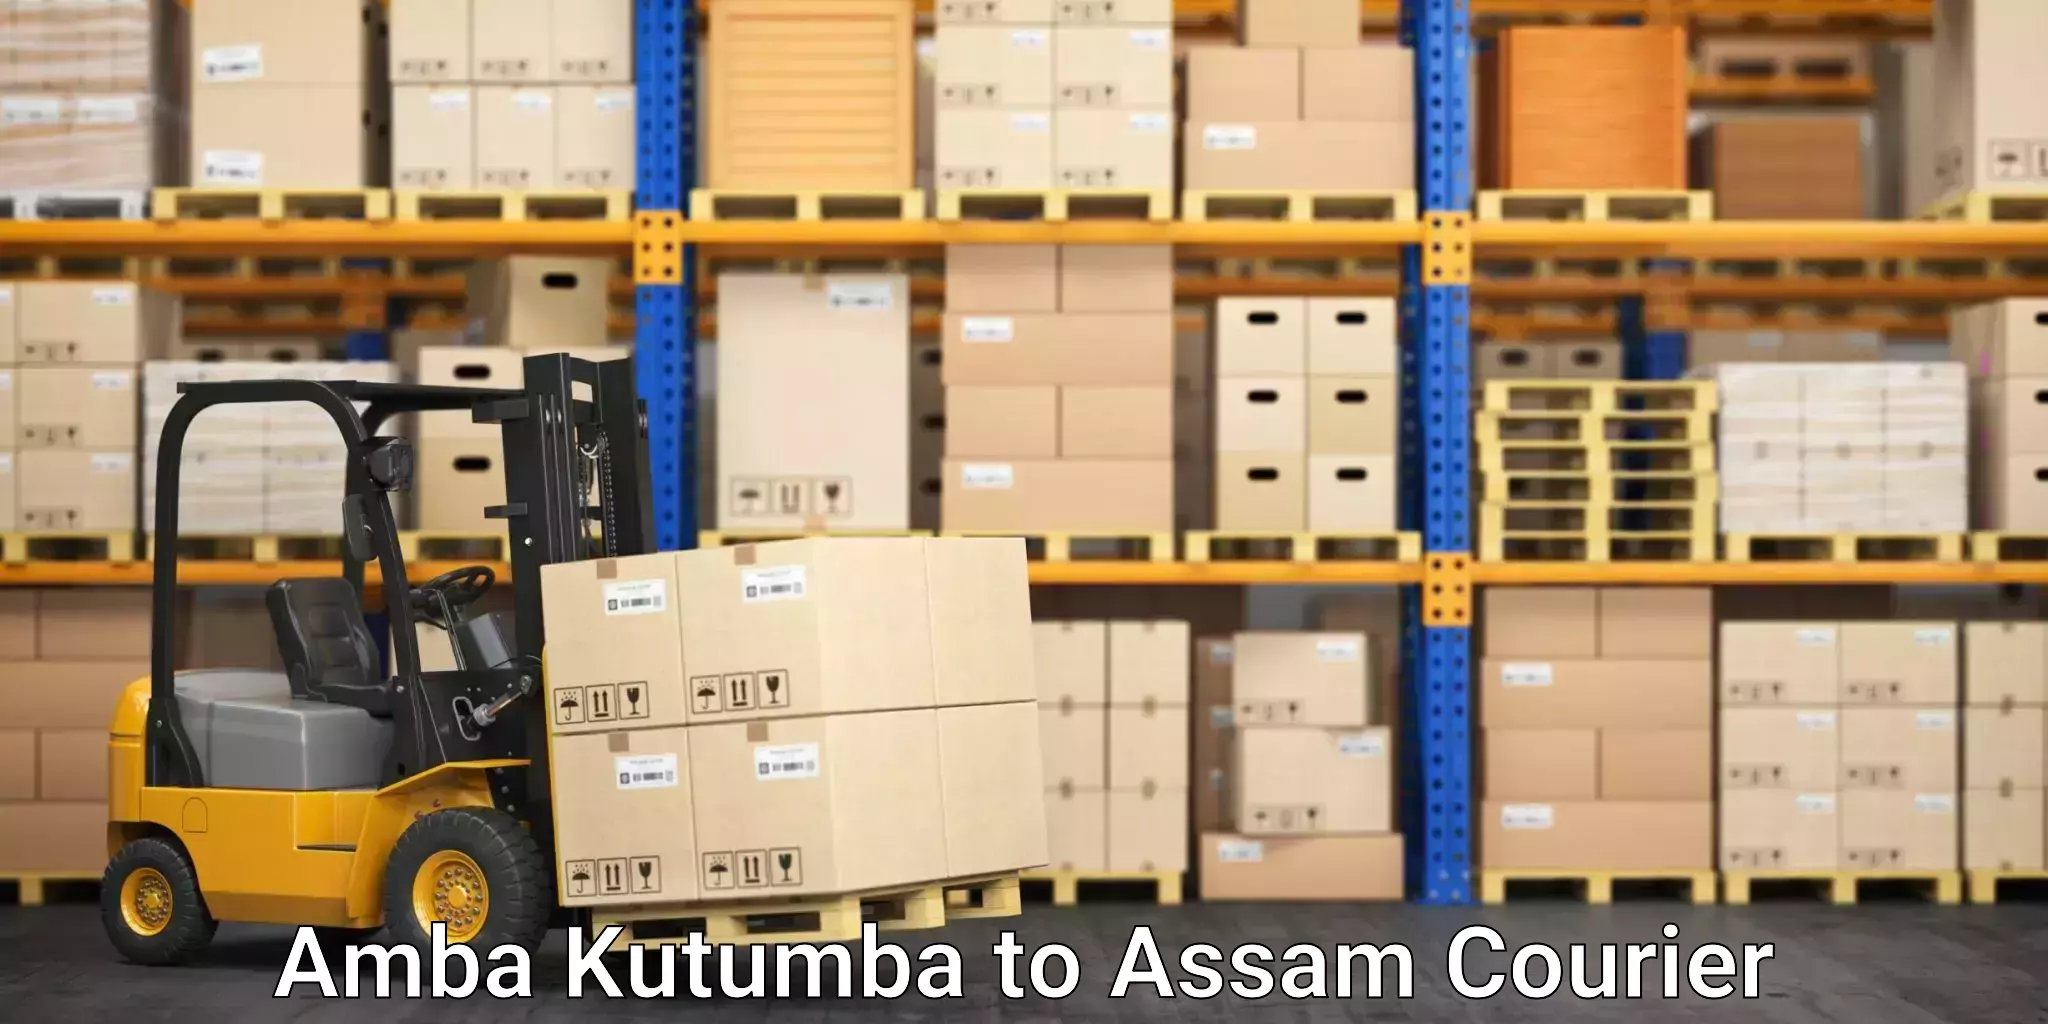 Furniture transport and storage Amba Kutumba to Dhupdhara